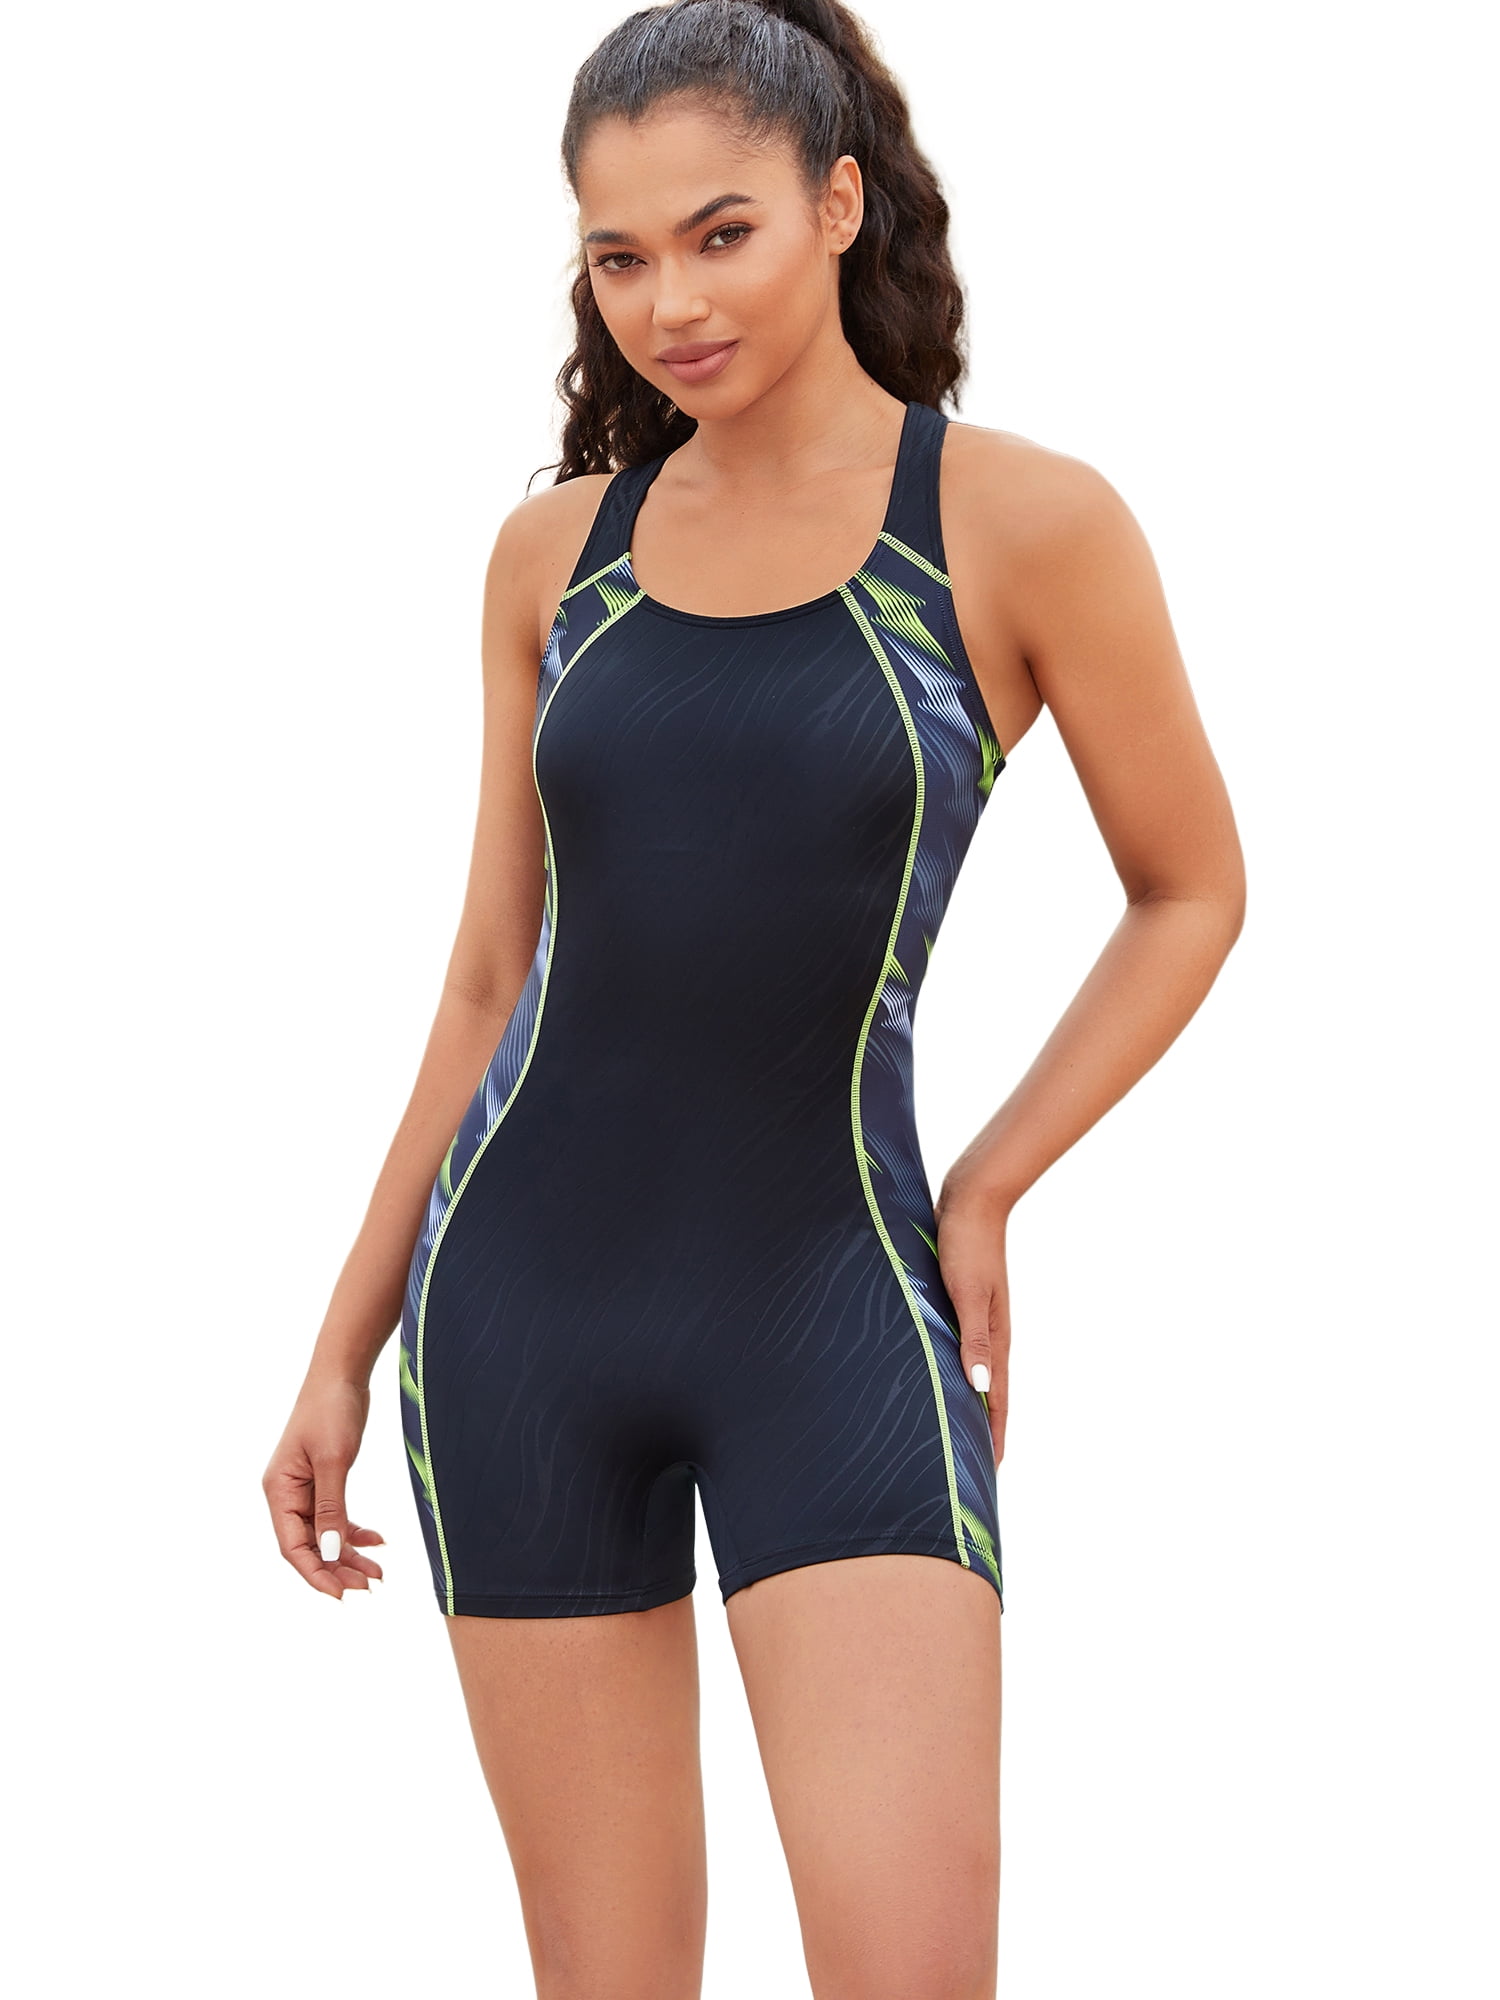 Charmo Women's One-Piece Beachwear Sport Bathing Suit 